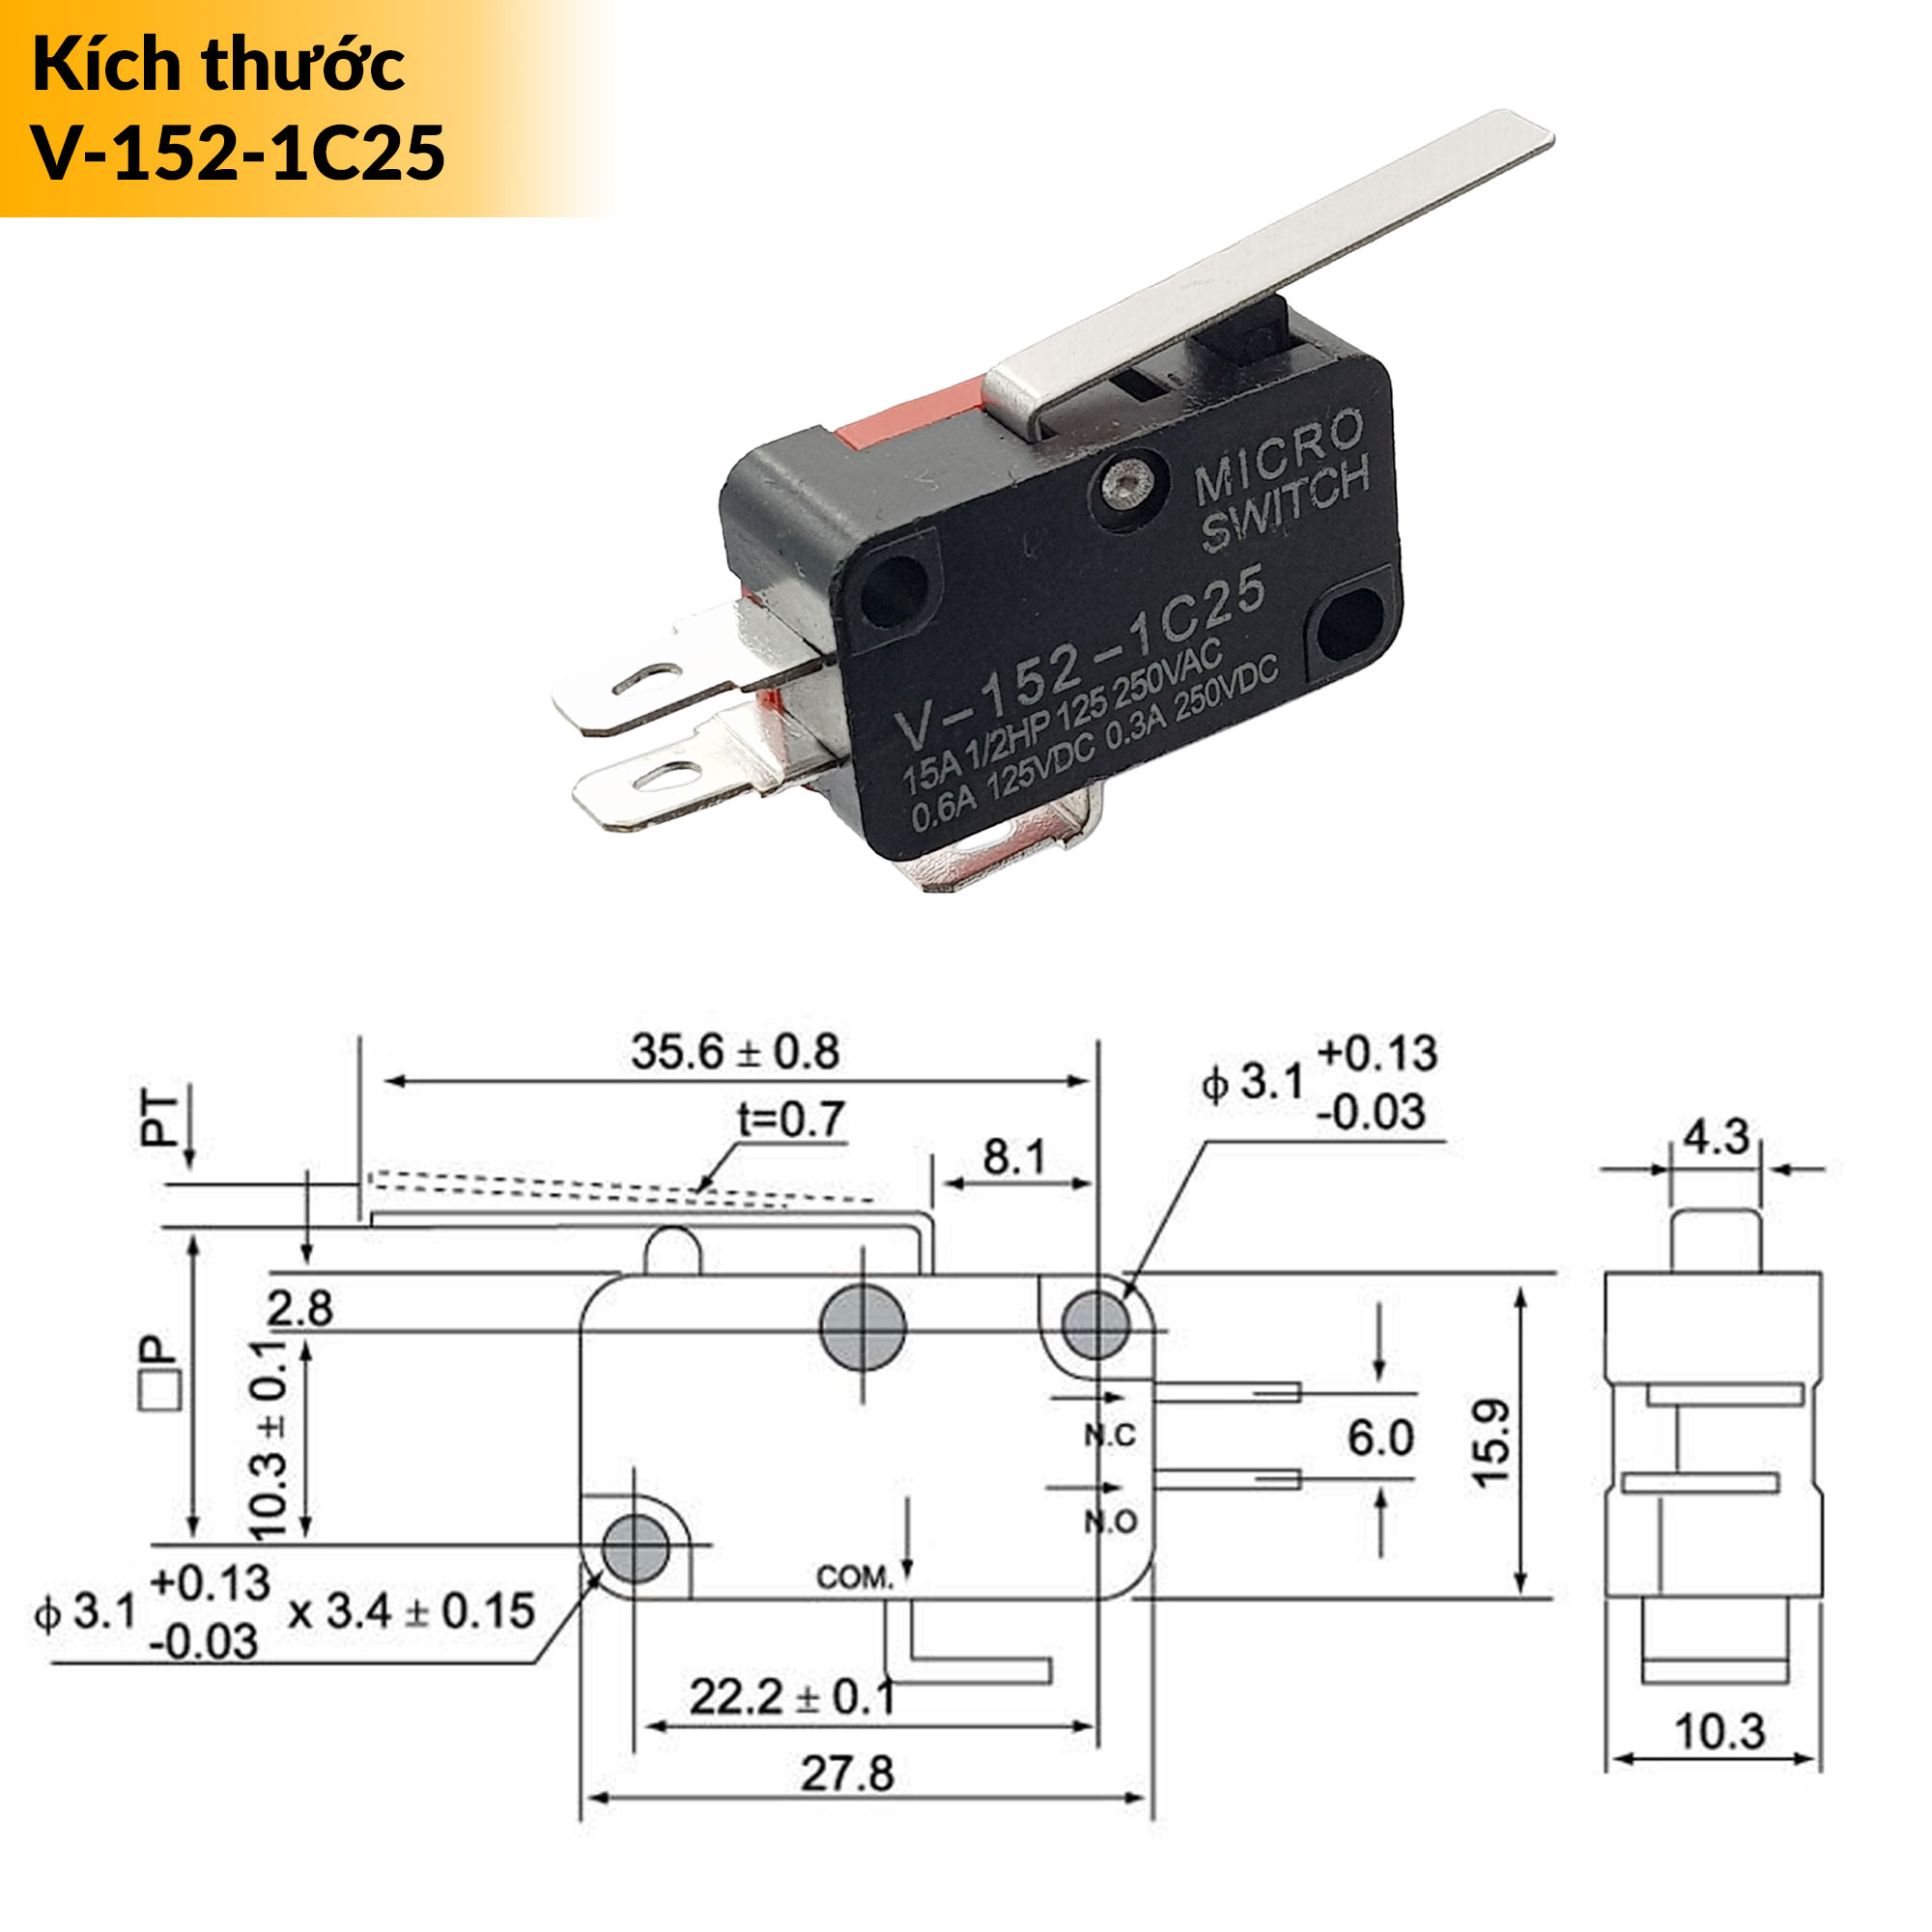 Kích thước công tắc hành trình Micro Switch loại tốt V-152-1C25